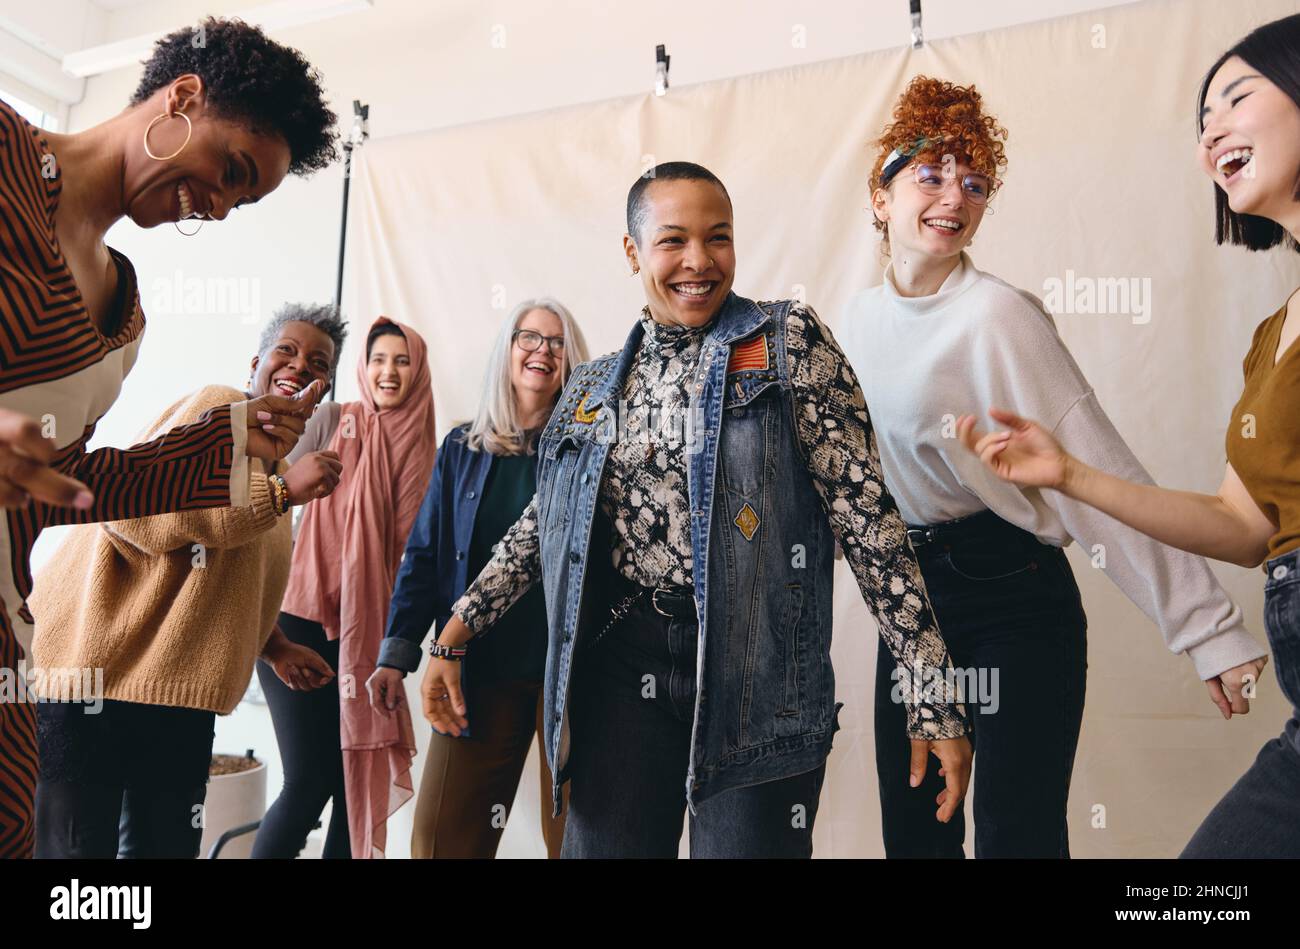 Internationaler Frauentag ein ehrliches Porträt von tanzenden Frauen aus unterschiedlichen ethnischen Altersgruppen Stockfoto